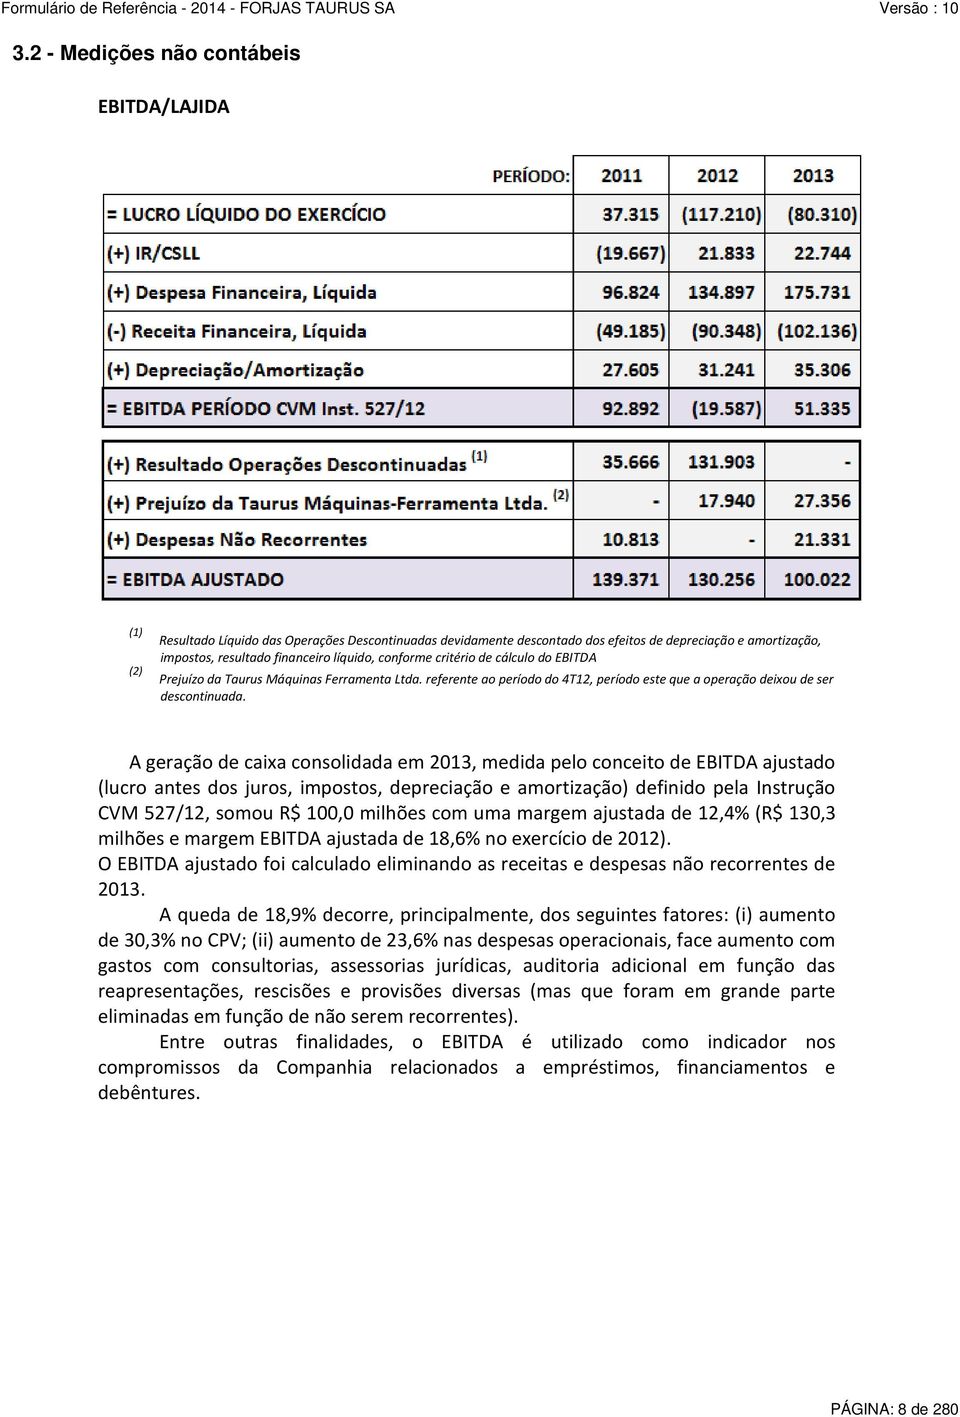 A geração de caixa consolidada em 2013, medida pelo conceito de EBITDA ajustado (lucro antes dos juros, impostos, depreciação e amortização) definido pela Instrução CVM 527/12, somou R$ 100,0 milhões